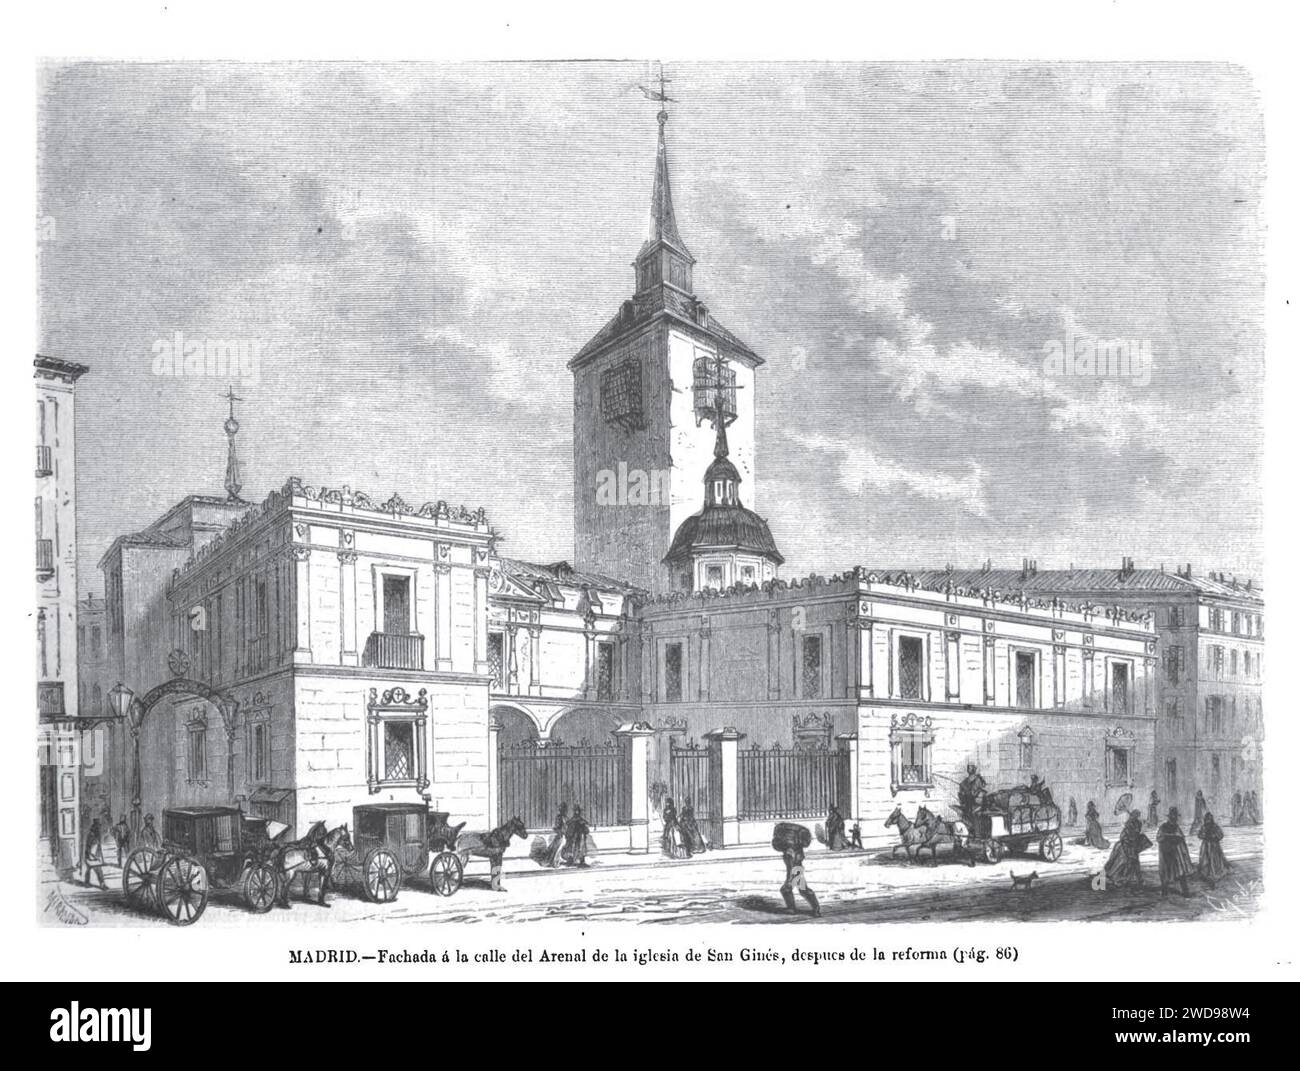 1872-02-08, La Ilustración Española y Americana, Madrid, Fachada a la calle del Arenal de la iglesia de San Ginés, después de la reforma. Stock Photo